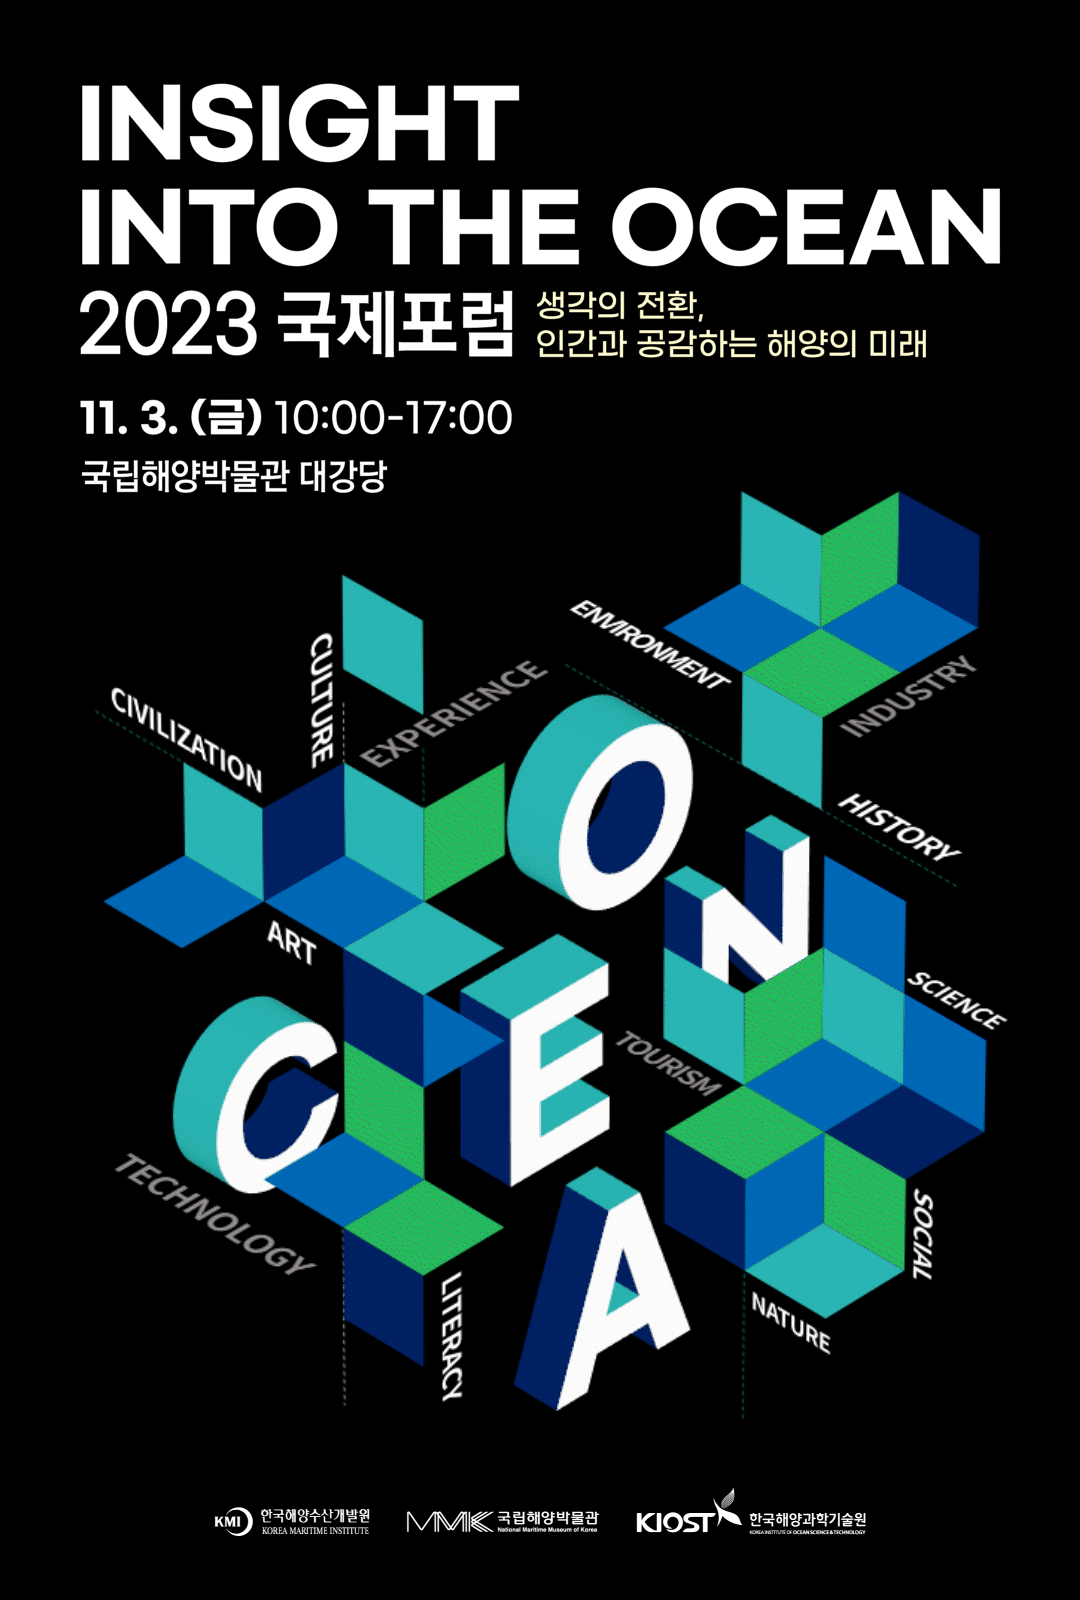 Insight into the Ocean 2023 국제포럼 생각의 전환, 인간과 공감하는 해양의 미래 포스터. 11월 3일 금요일 오전 10시부터 오후5시까지 국립해양박물관 대강당에서 진행됩니다.